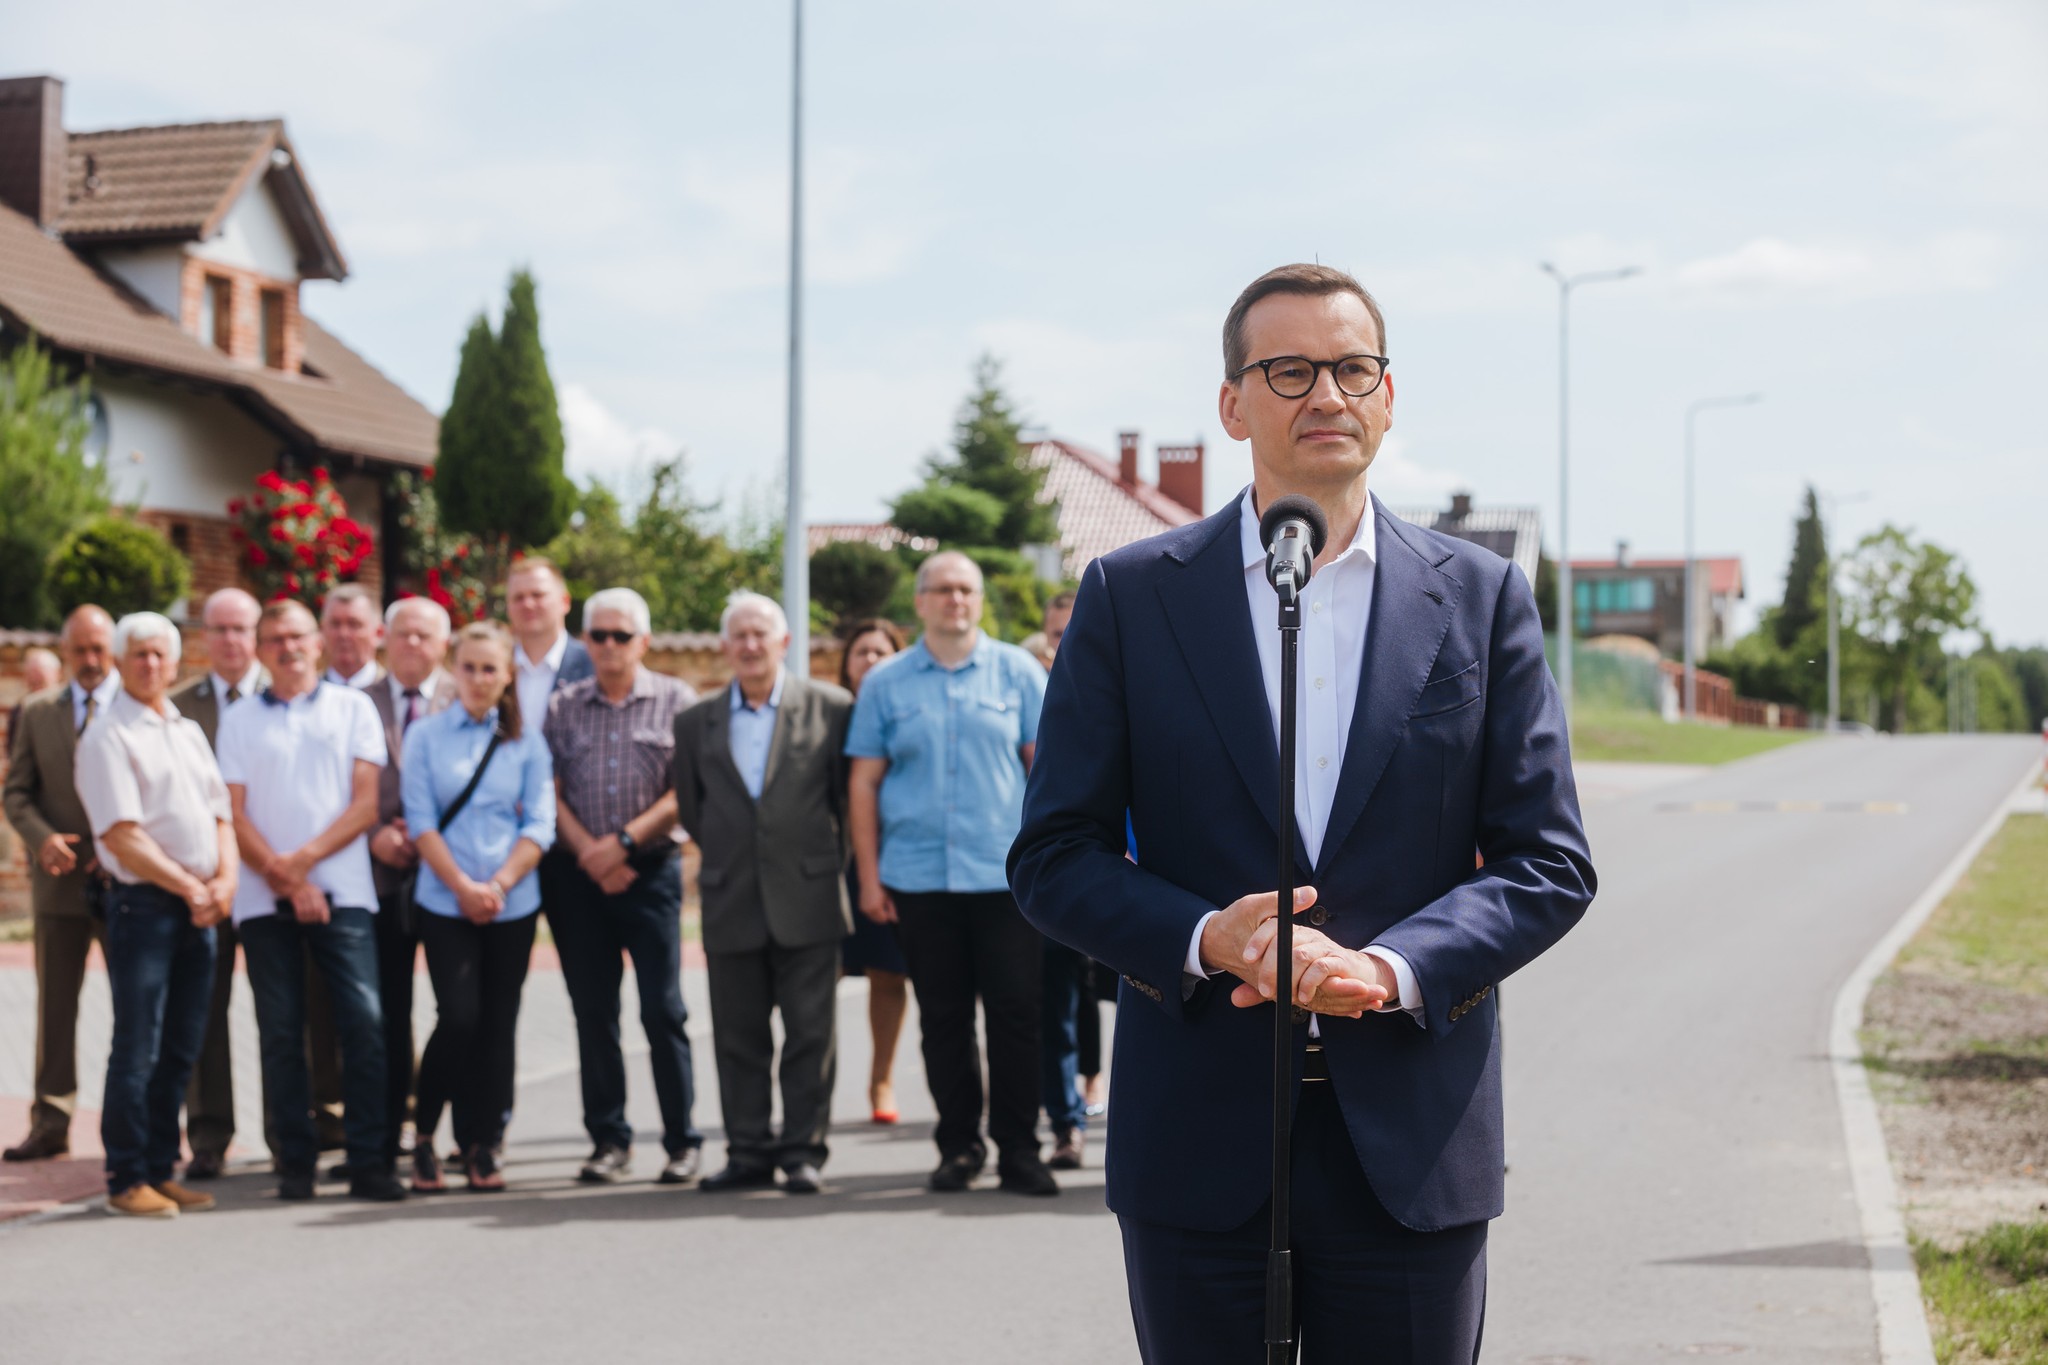 Rząd Prawa i Sprawiedliwości konsekwentnie realizuje ideę rozwoju Polski lokalnej i wyrównuje szanse